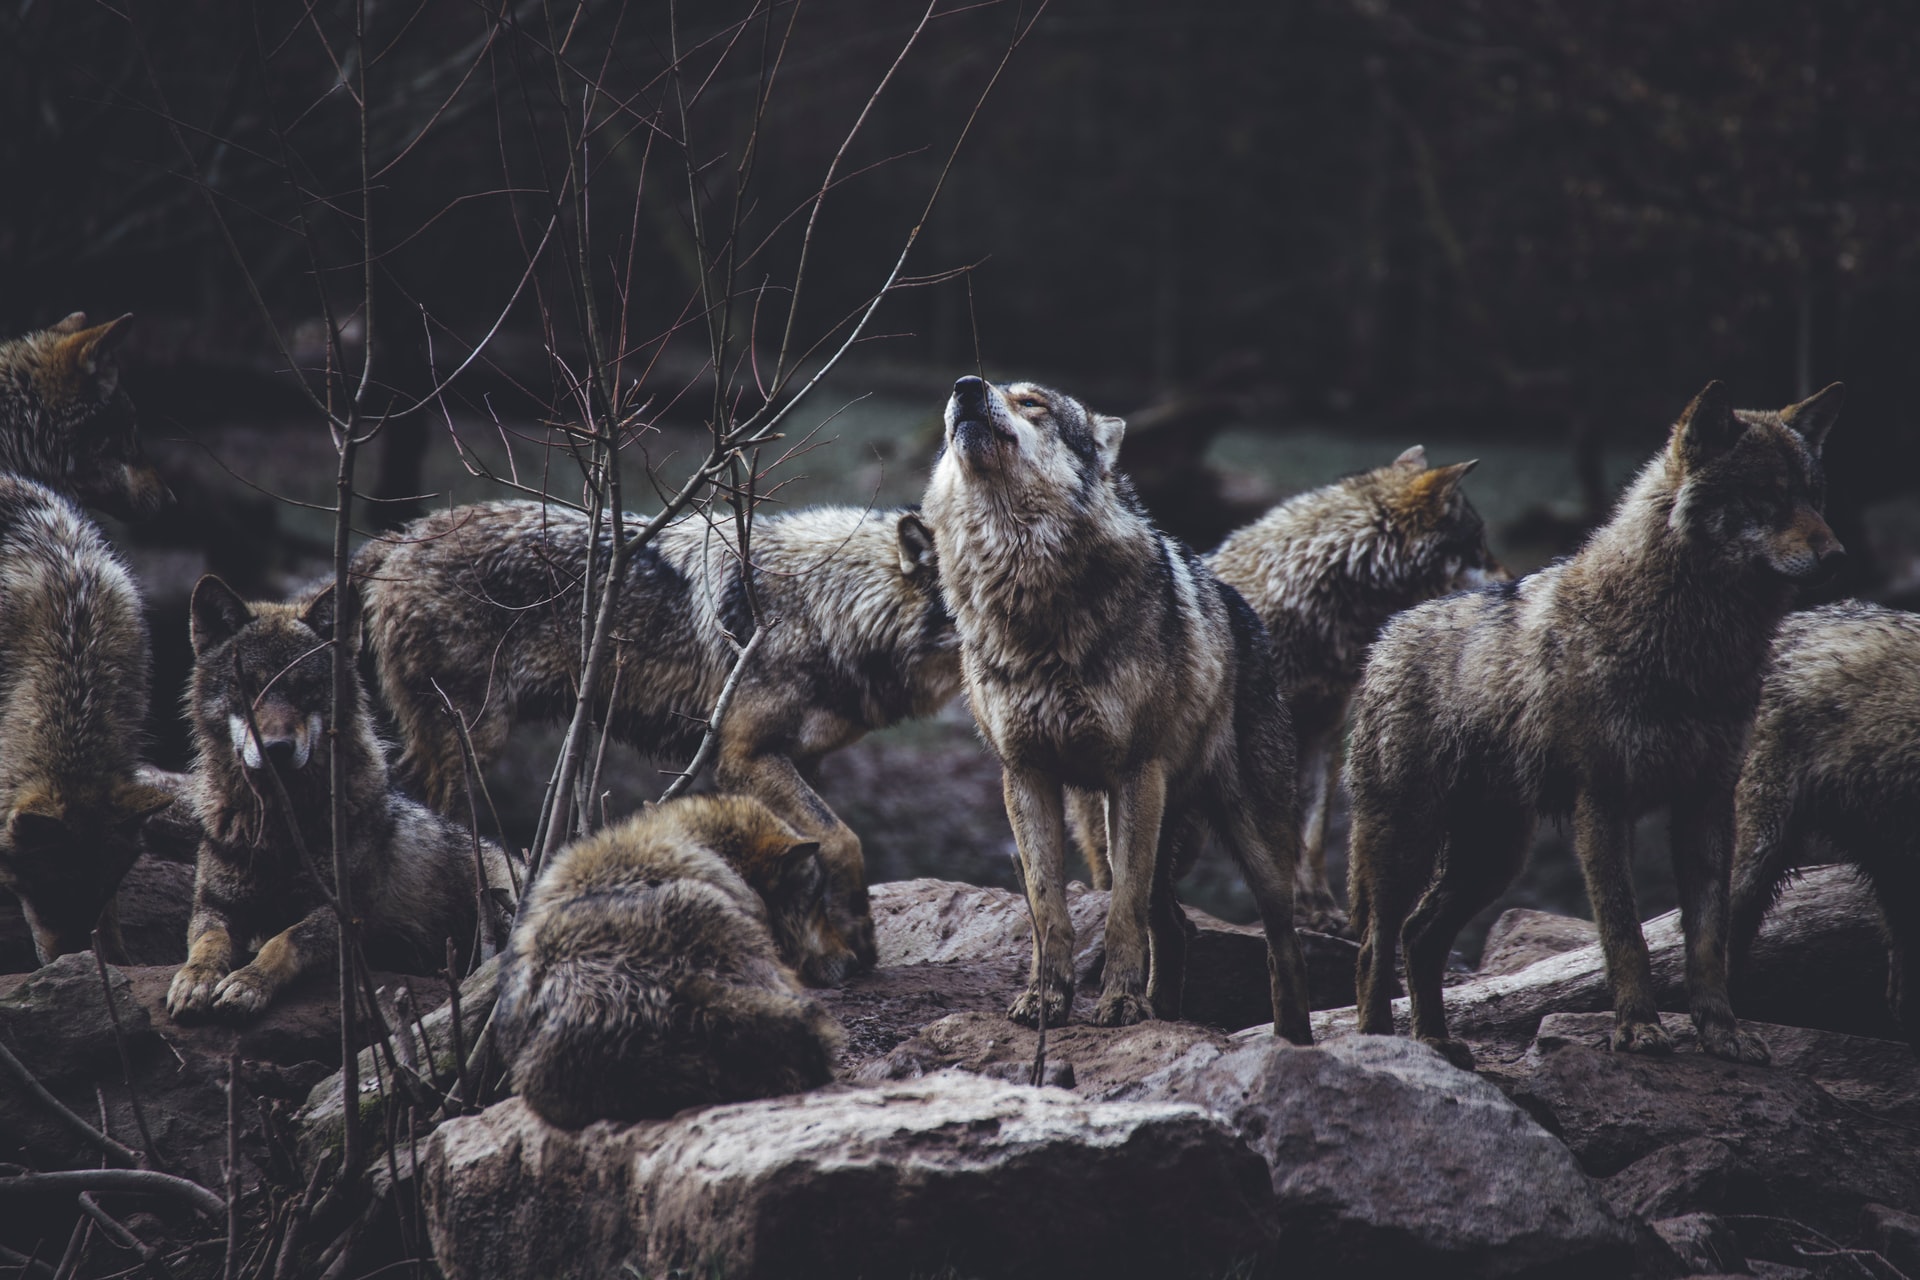 Jelentősen nőtt a farkaspopuláció és a farkastámadások száma is Németországban